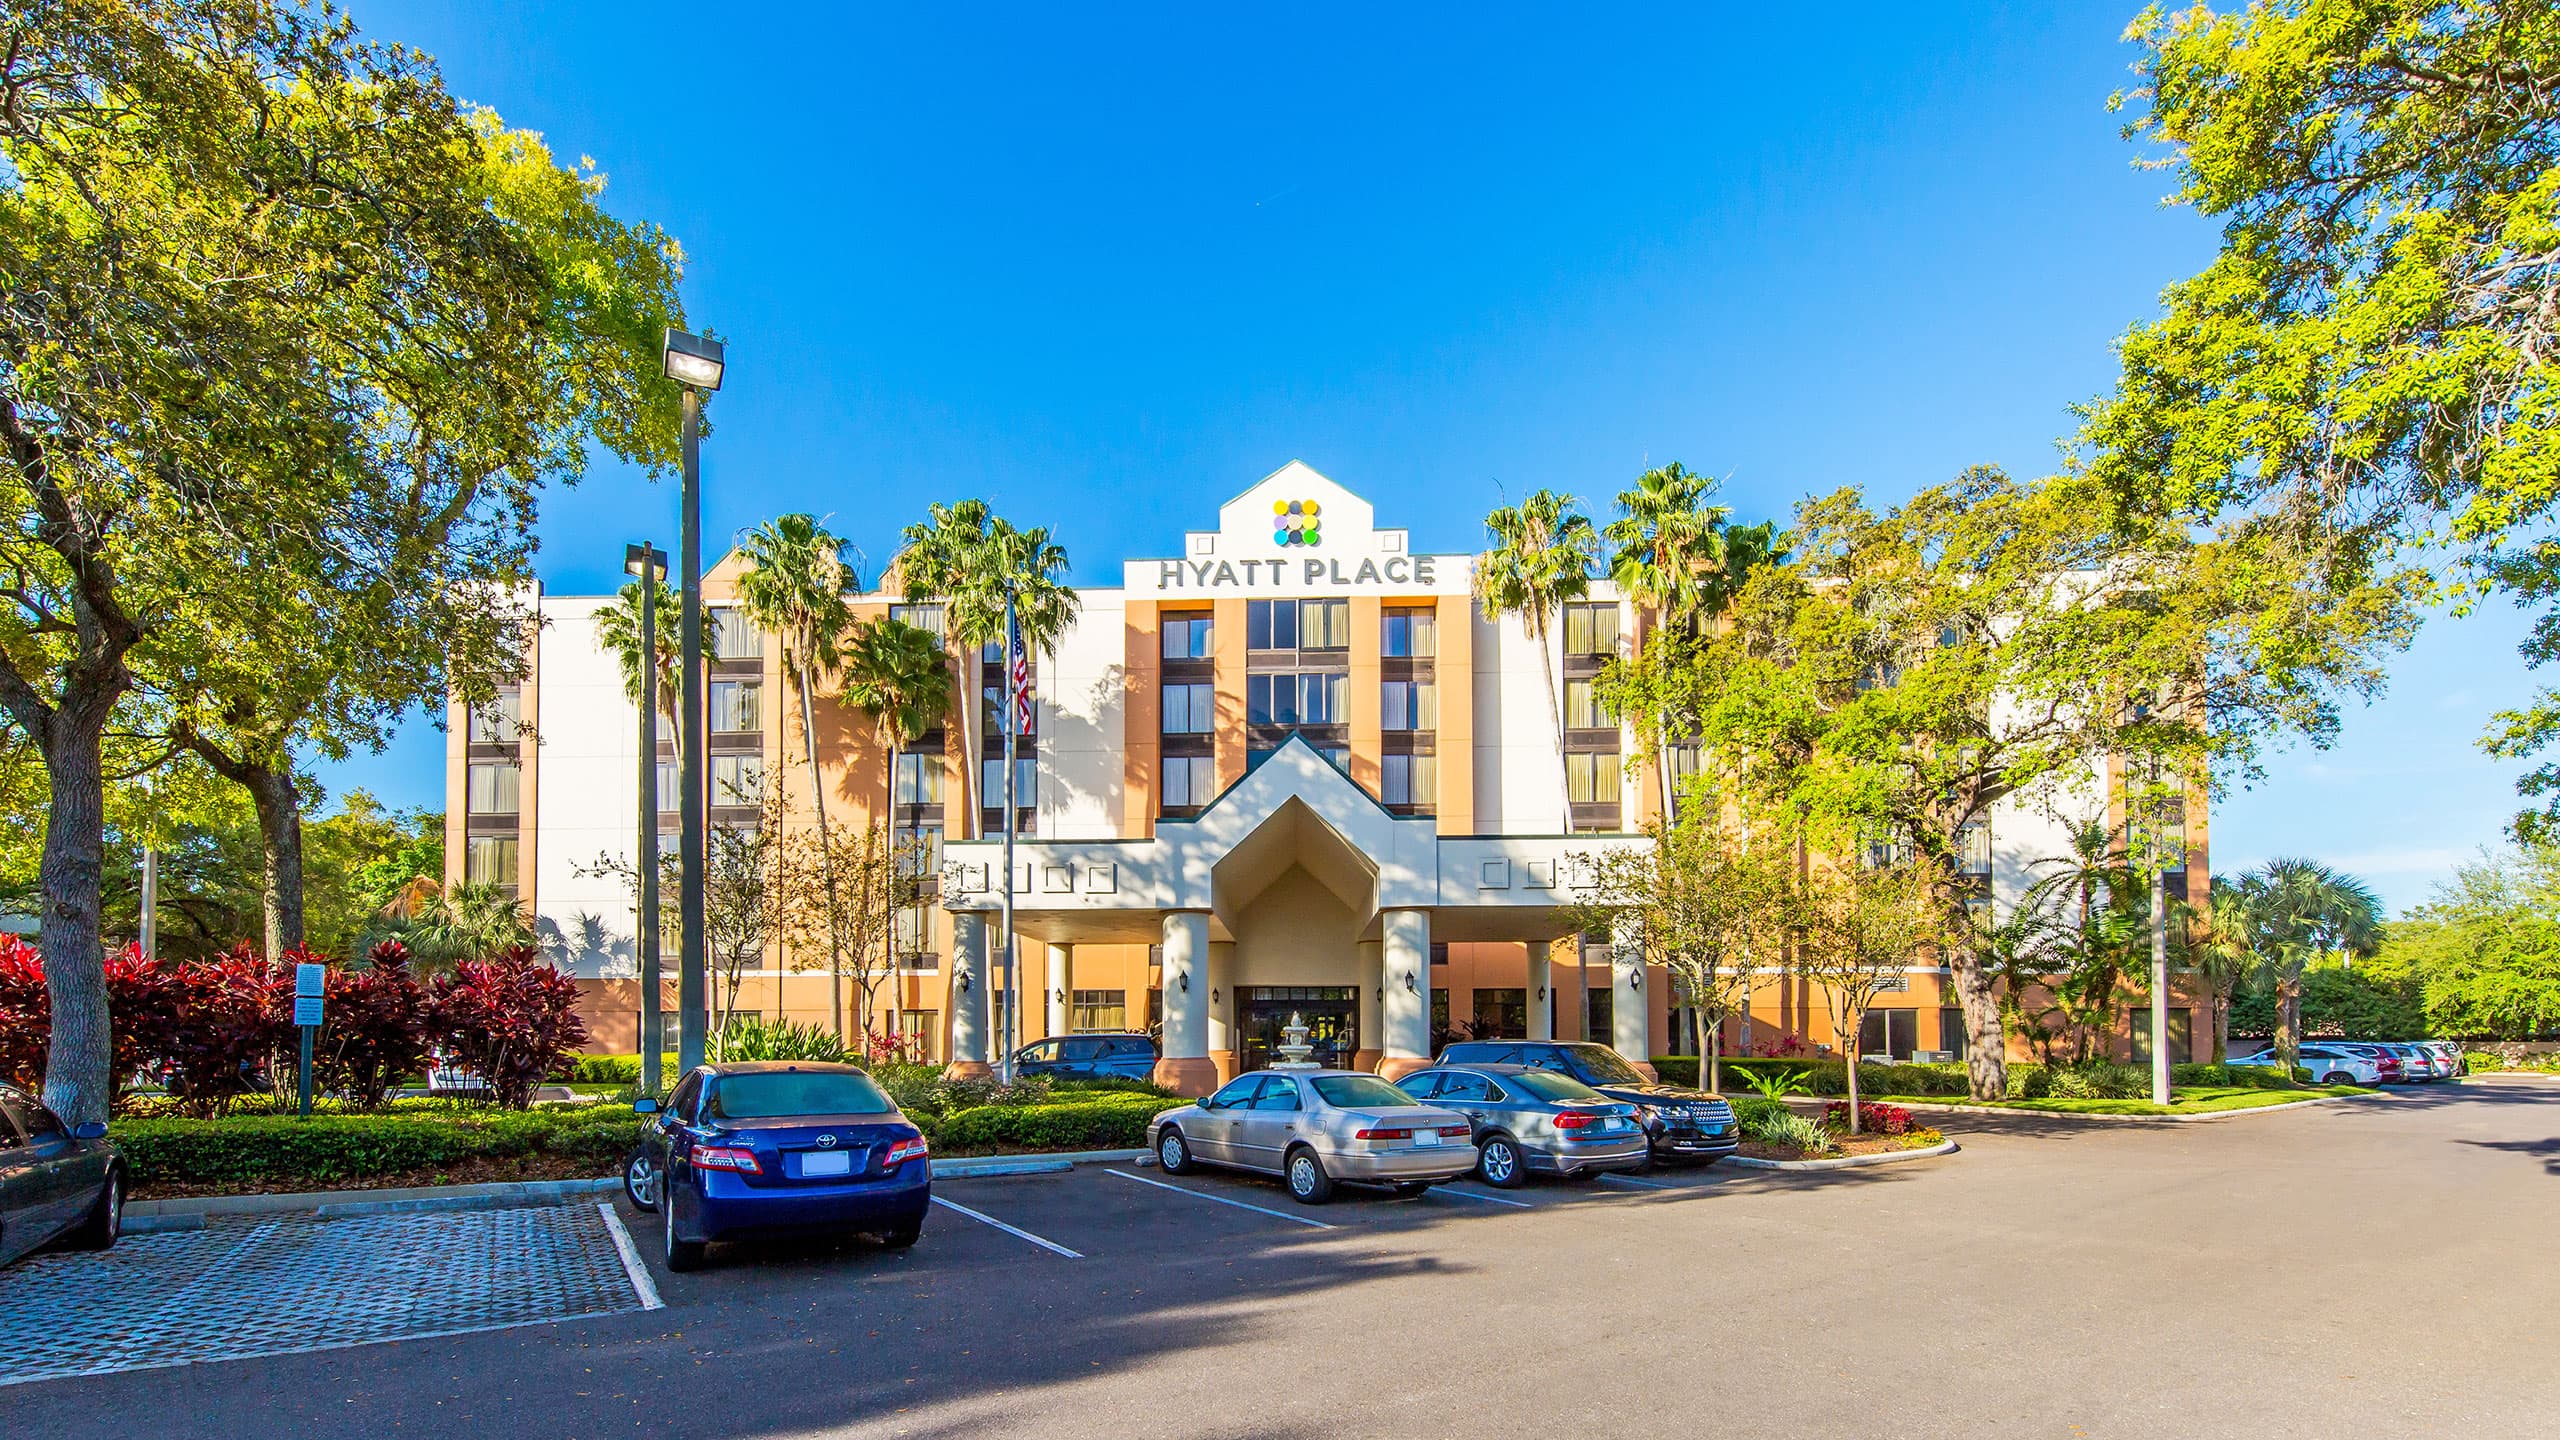 Busch Gardens Hotel in Tampa FL | Hyatt Place Hotel in Tampa